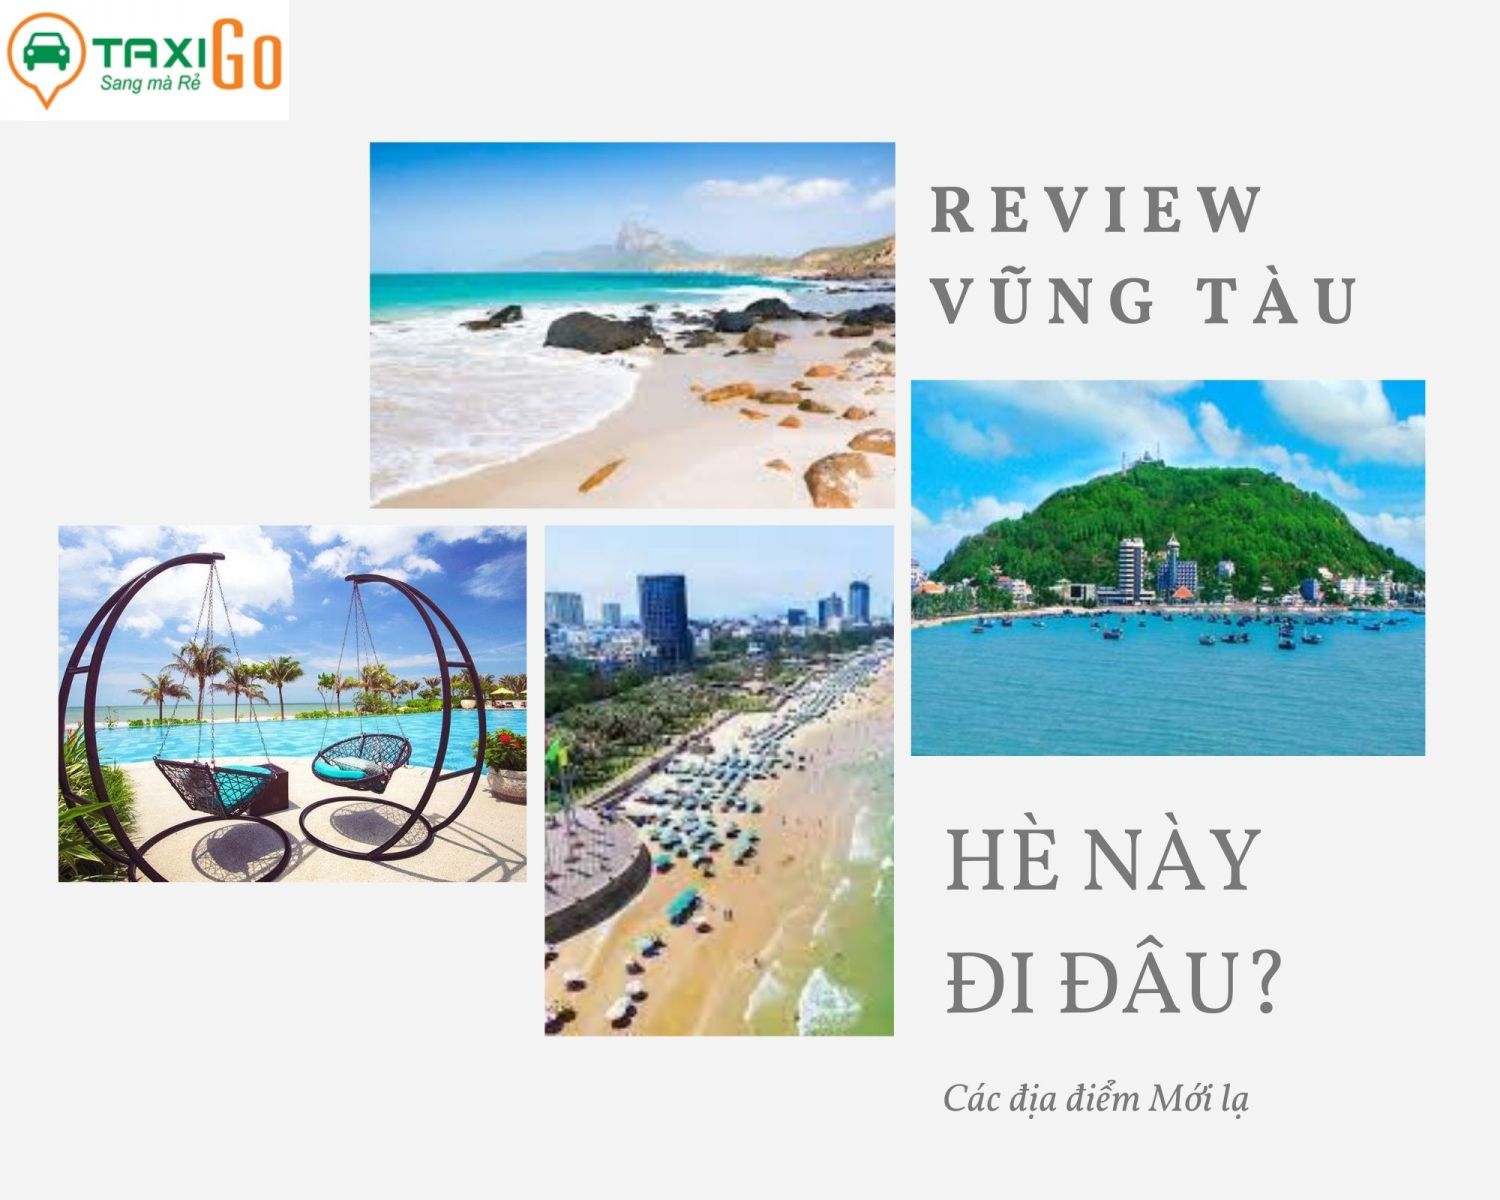 Kinh nghiệm du lịch VŨNG TÀU không nên bỏ lỡ – TaxiGo.vn